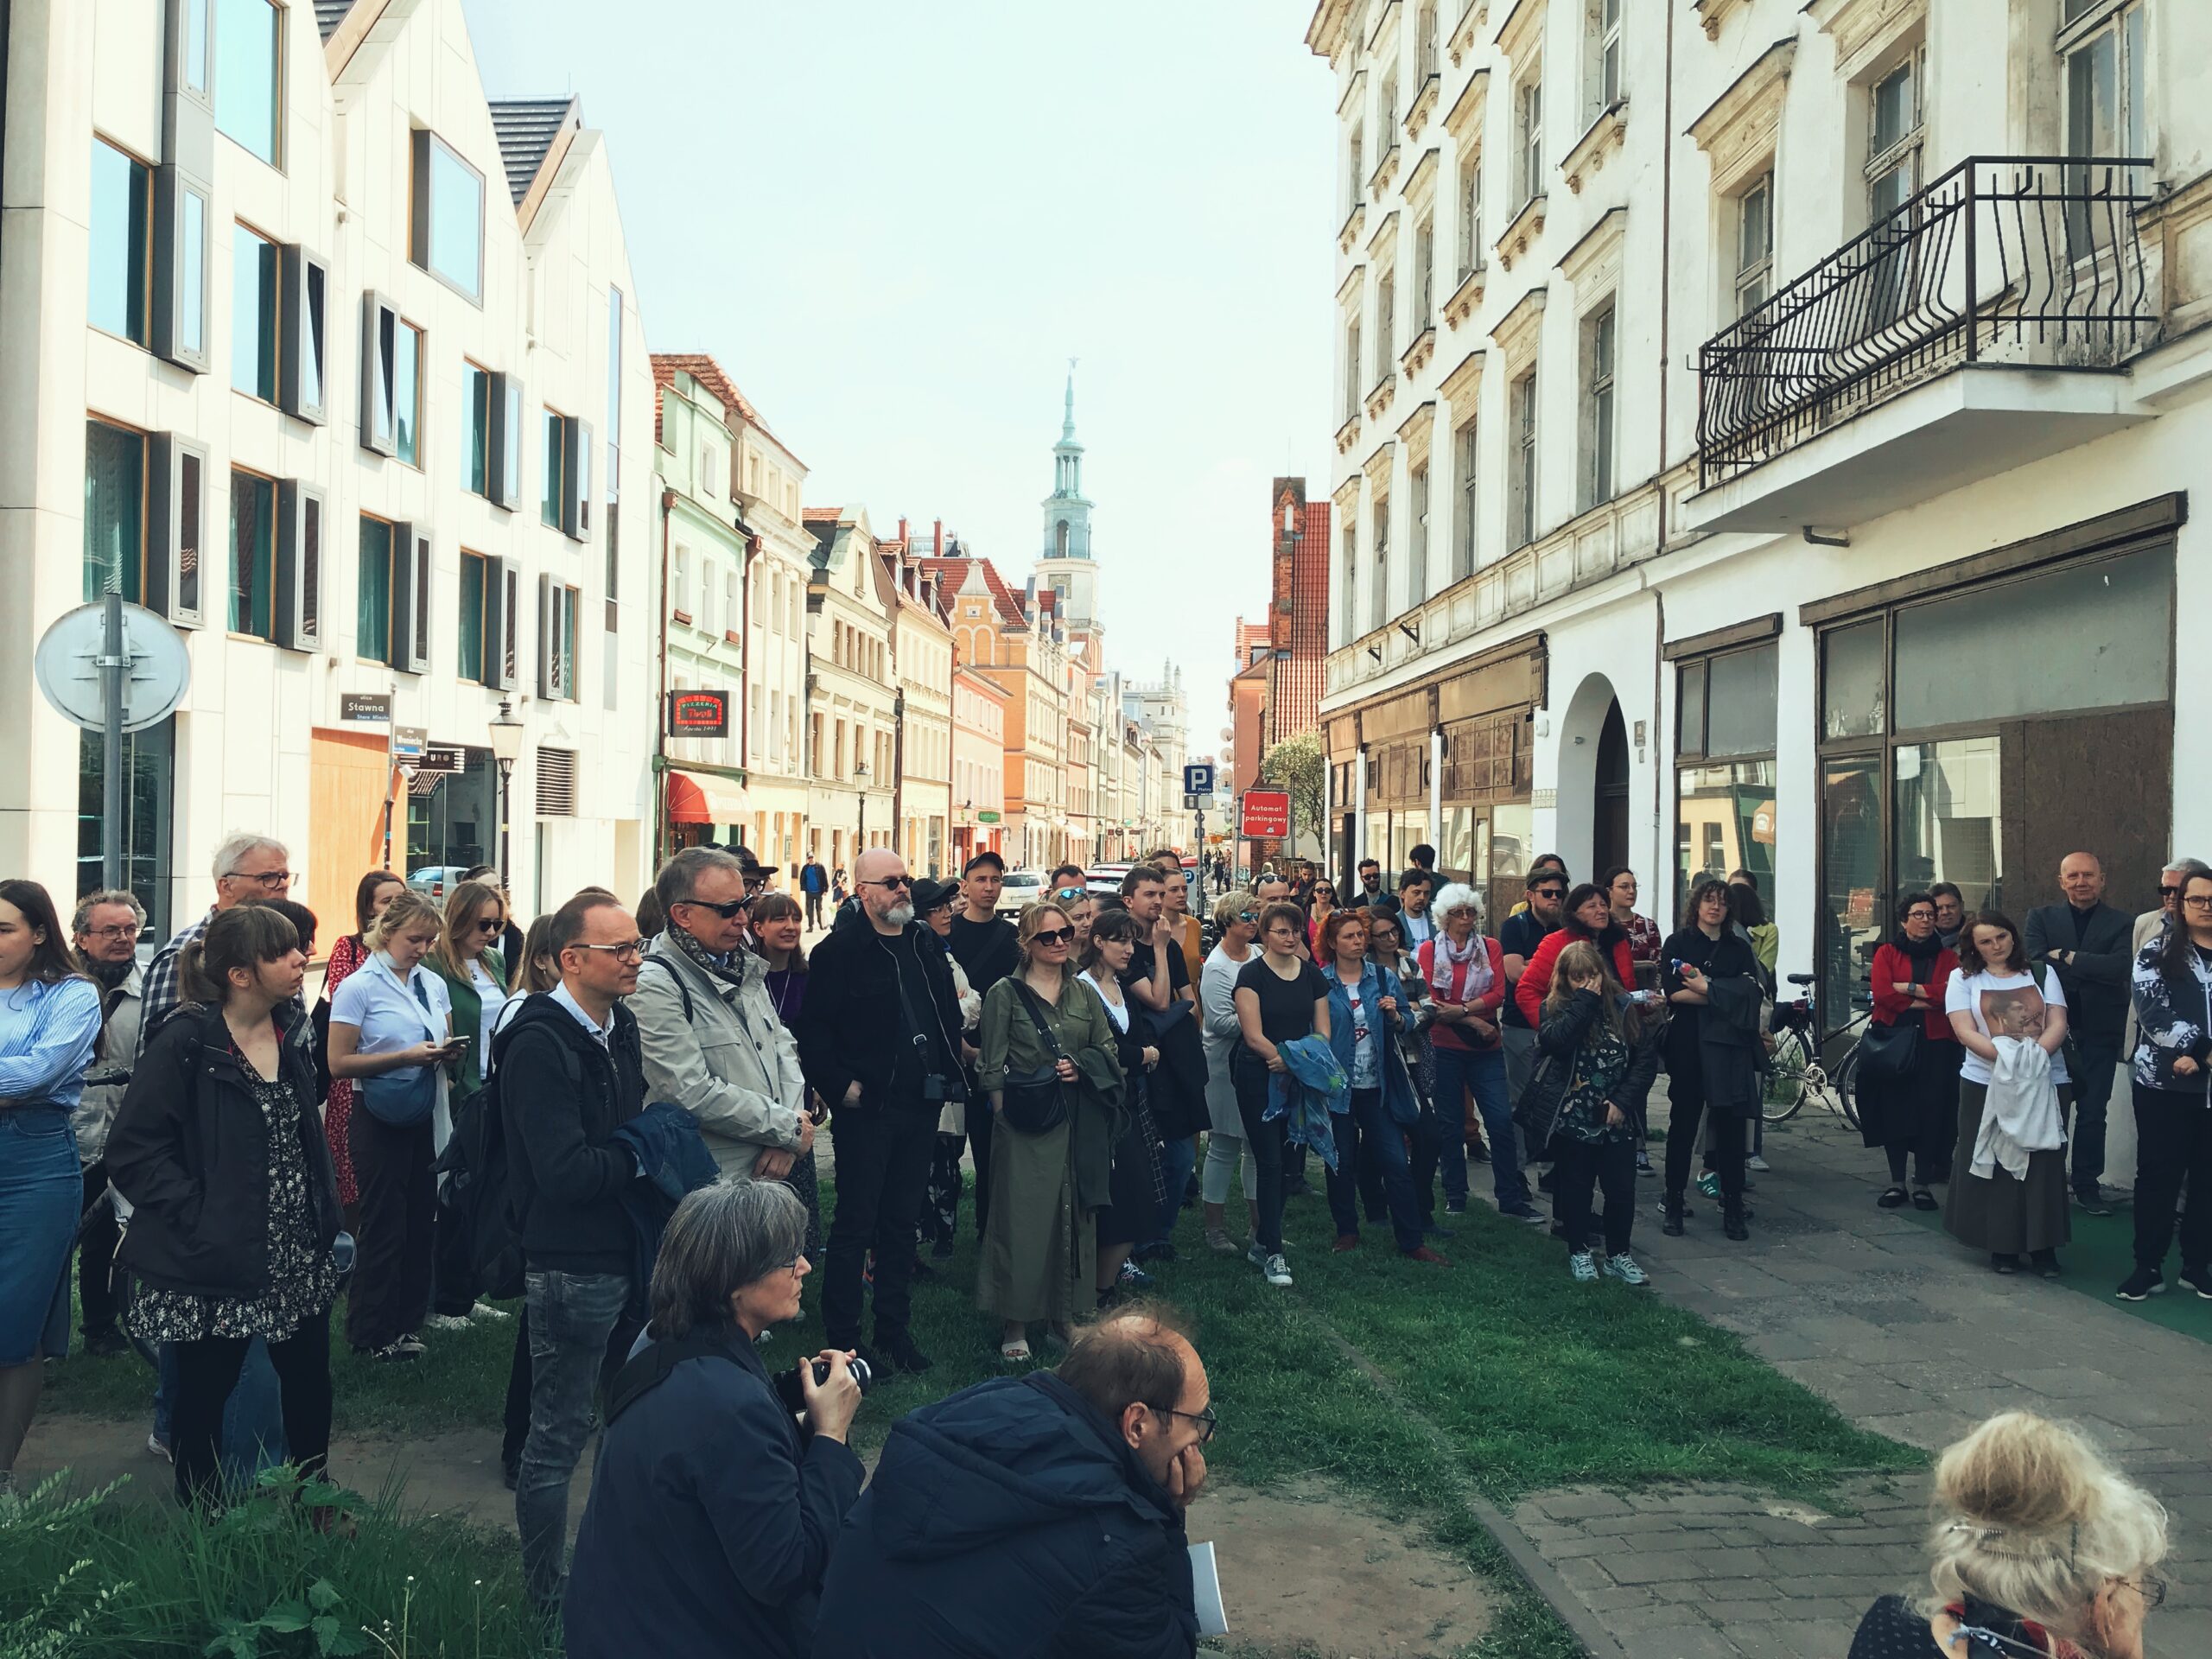 Poeci spacerowali i czytali wiersze w rozkopanym Poznaniu